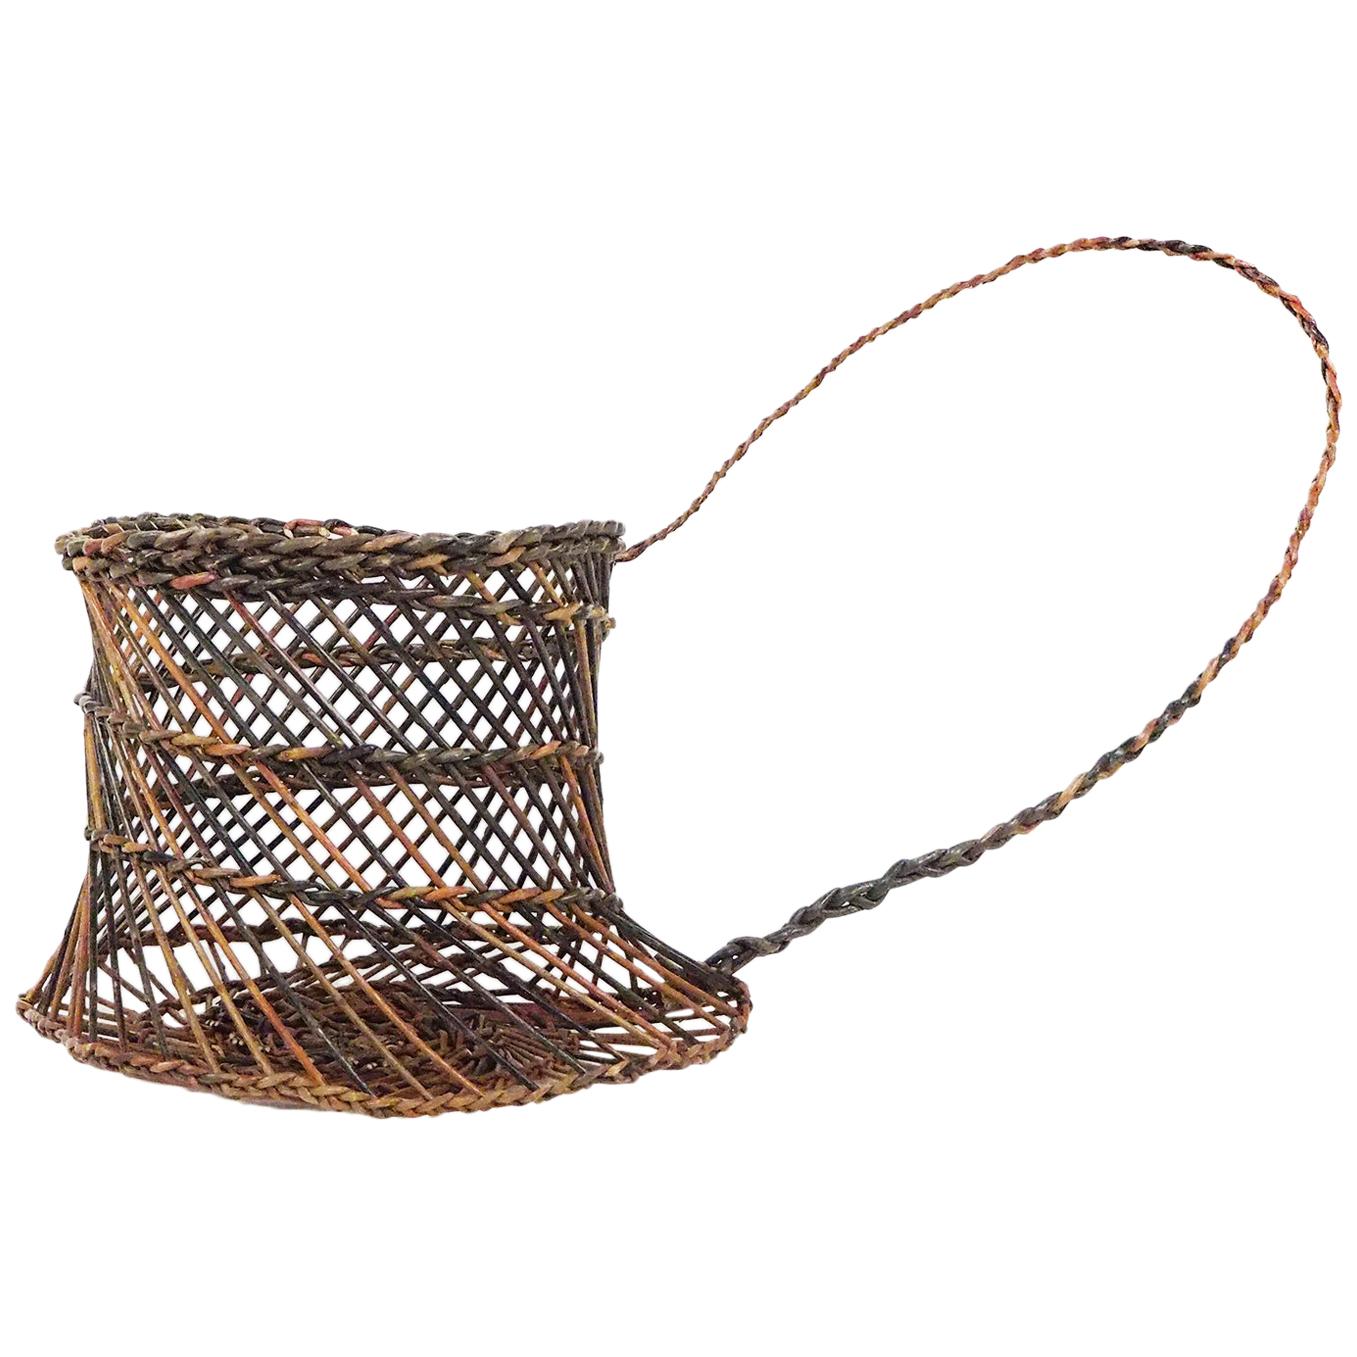 Willow Basket Capponara Shoulder Belt, Portego, Handmade in Italy